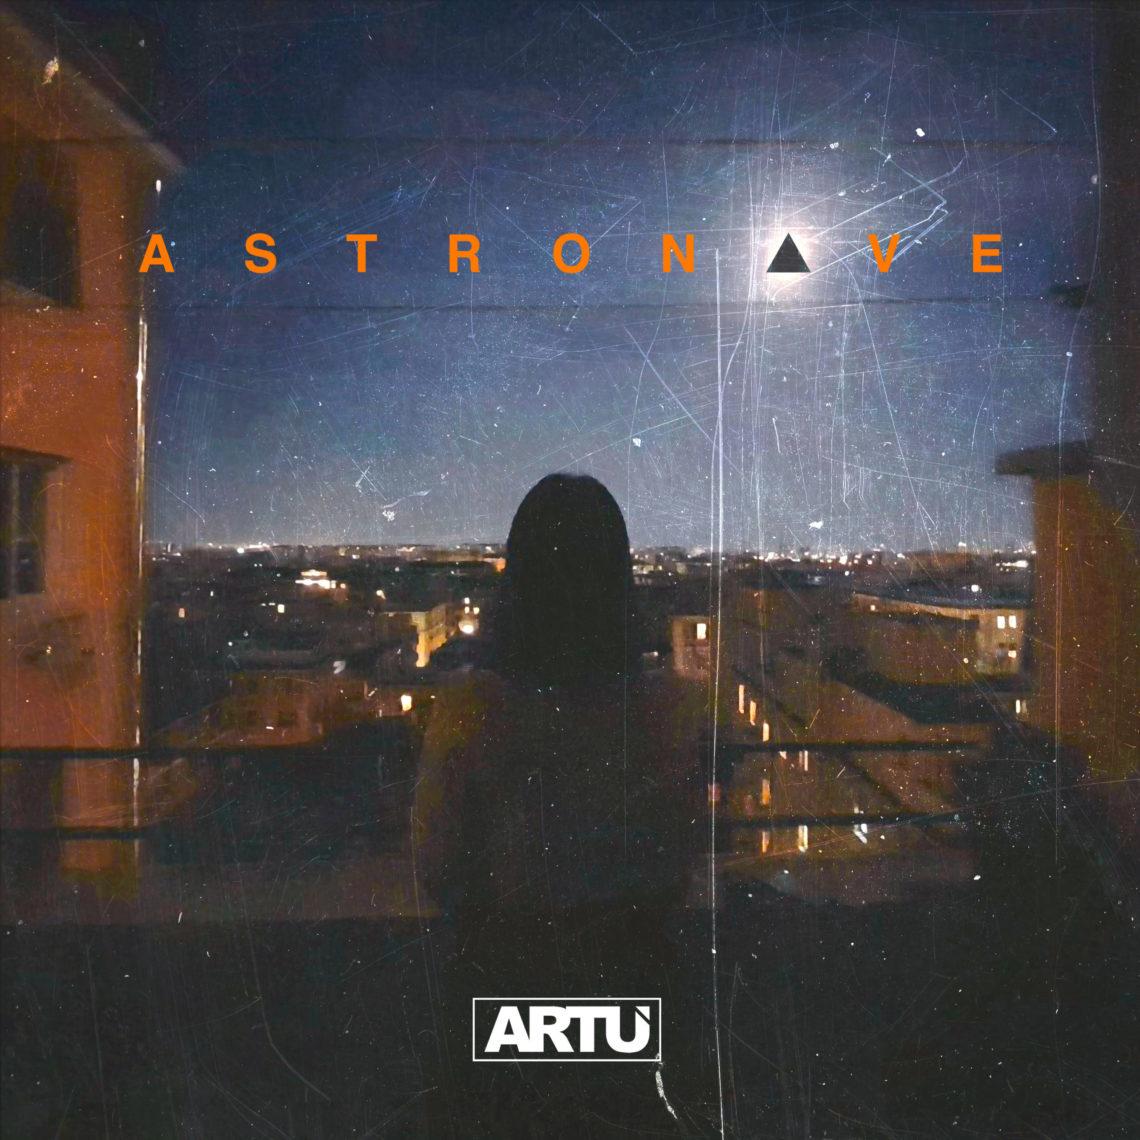 Esce oggi Astronave, il nuovo singolo di Artù. Da oggi in tutte le radio